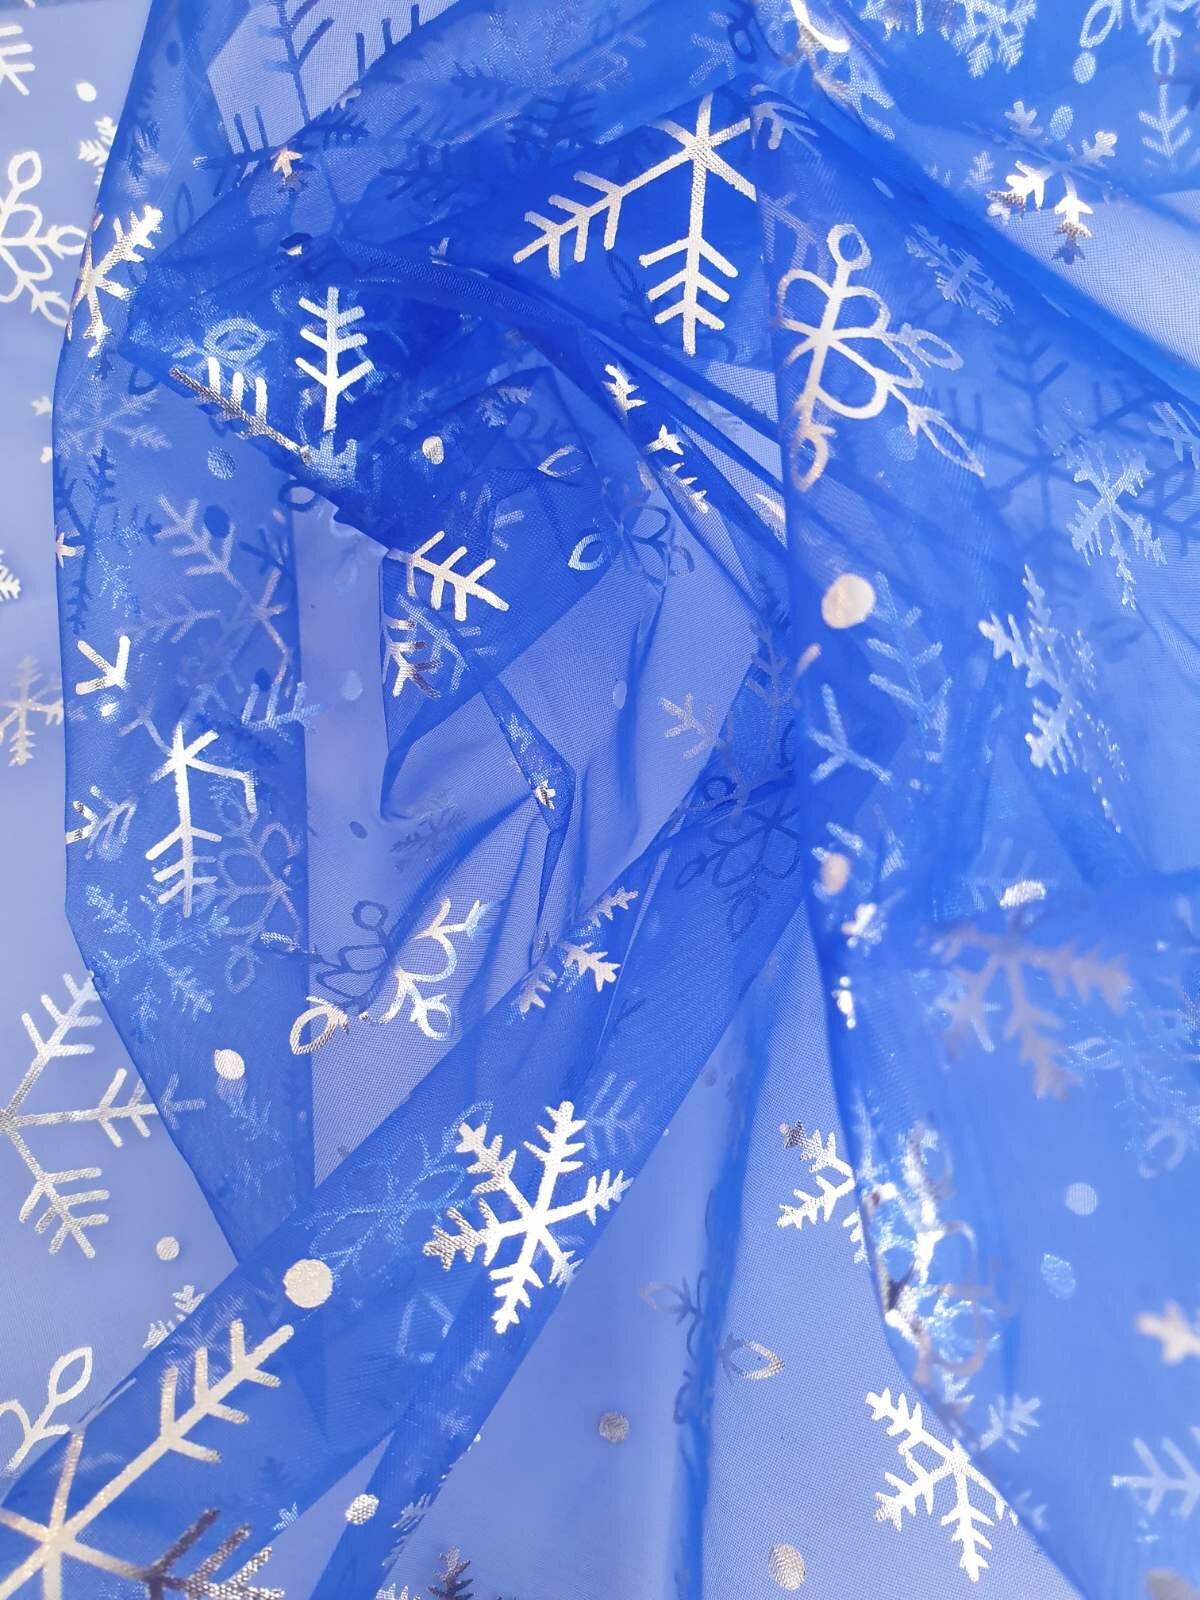 "Снежинка" - синяя органза для новогодней атмосферы